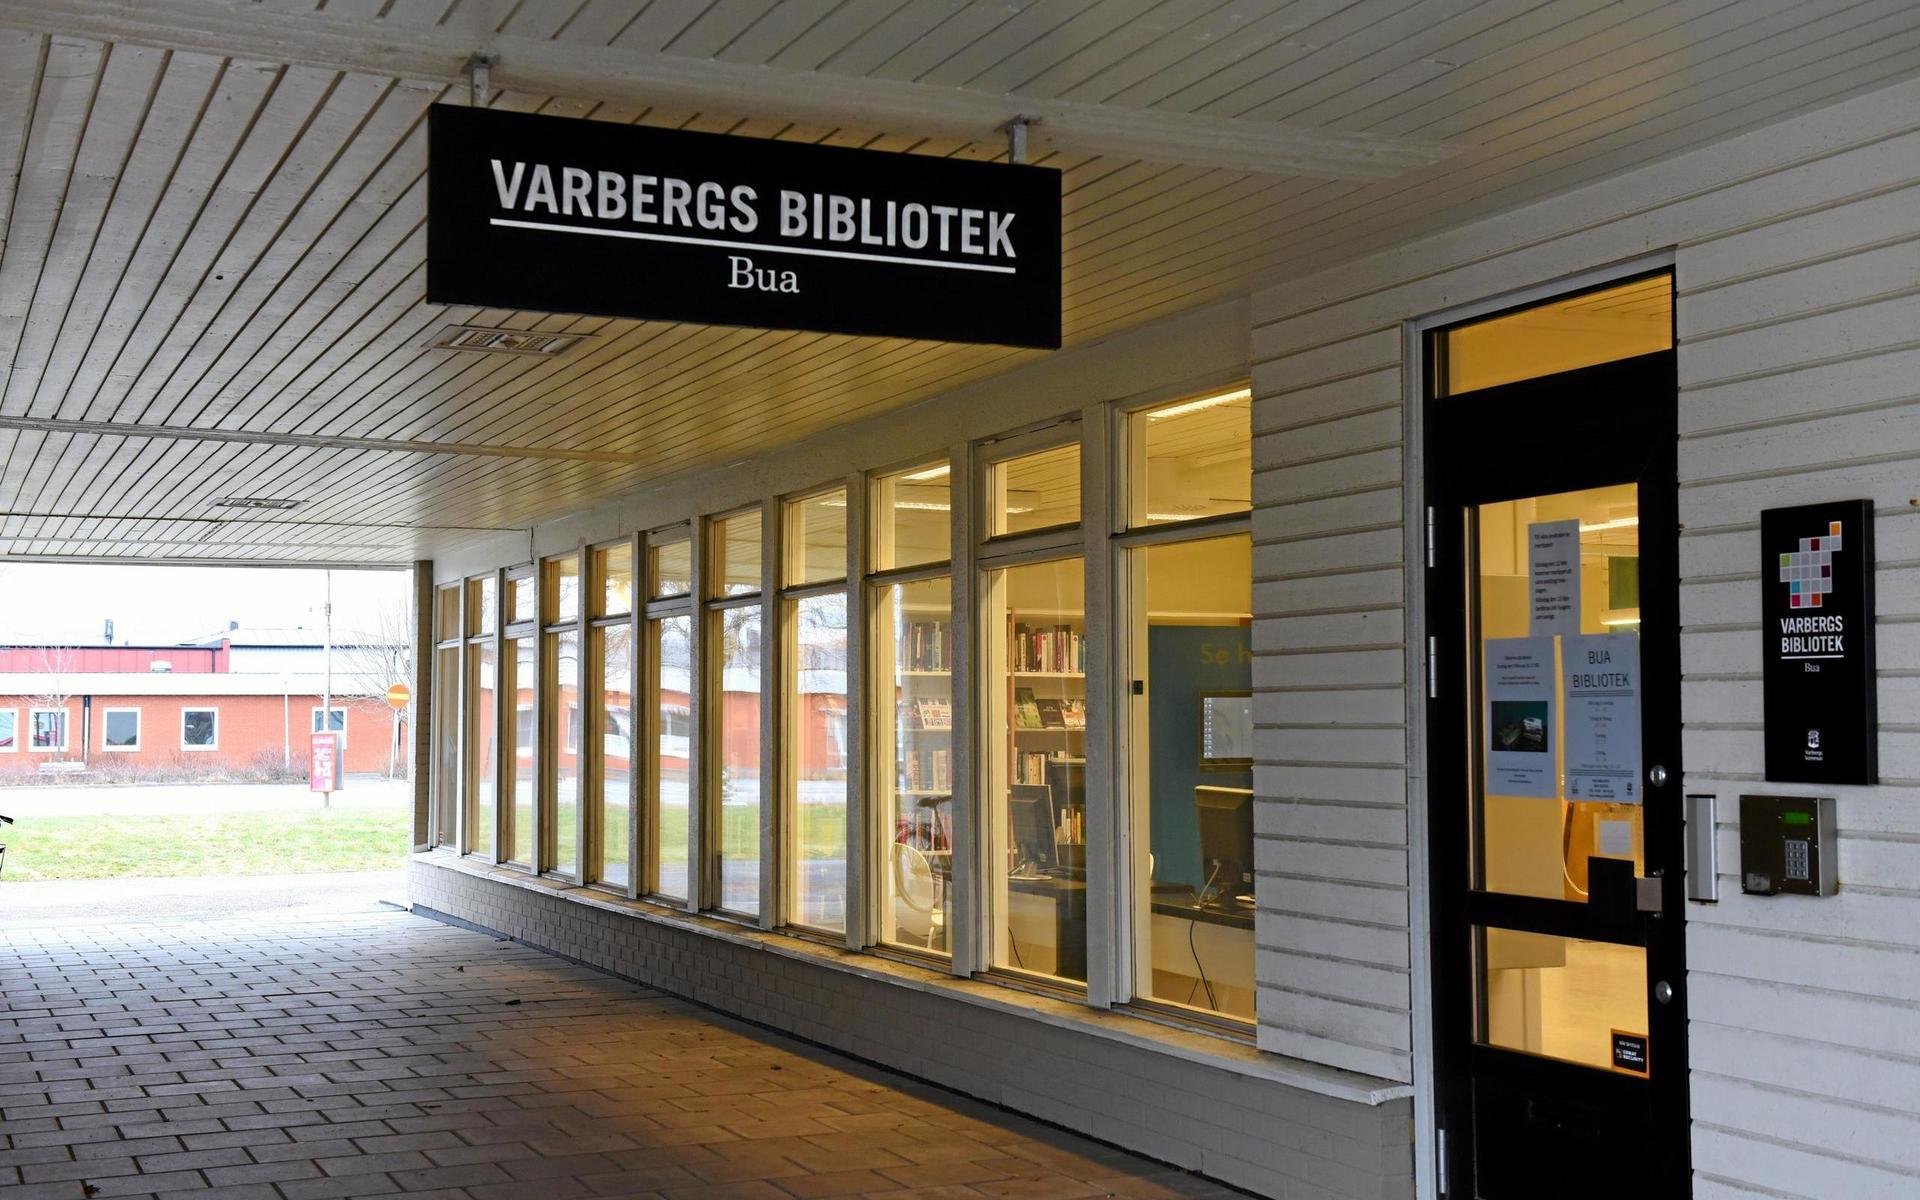 Lokalbiblioteket i Bua var det första i Varbergs kommun att byggas om så att det blev &quot;meröppet&quot;. Nu kan man låna böcker och göra andra ärenden där även när biblioteket är obemannat. Bild: Martin Erlandsson